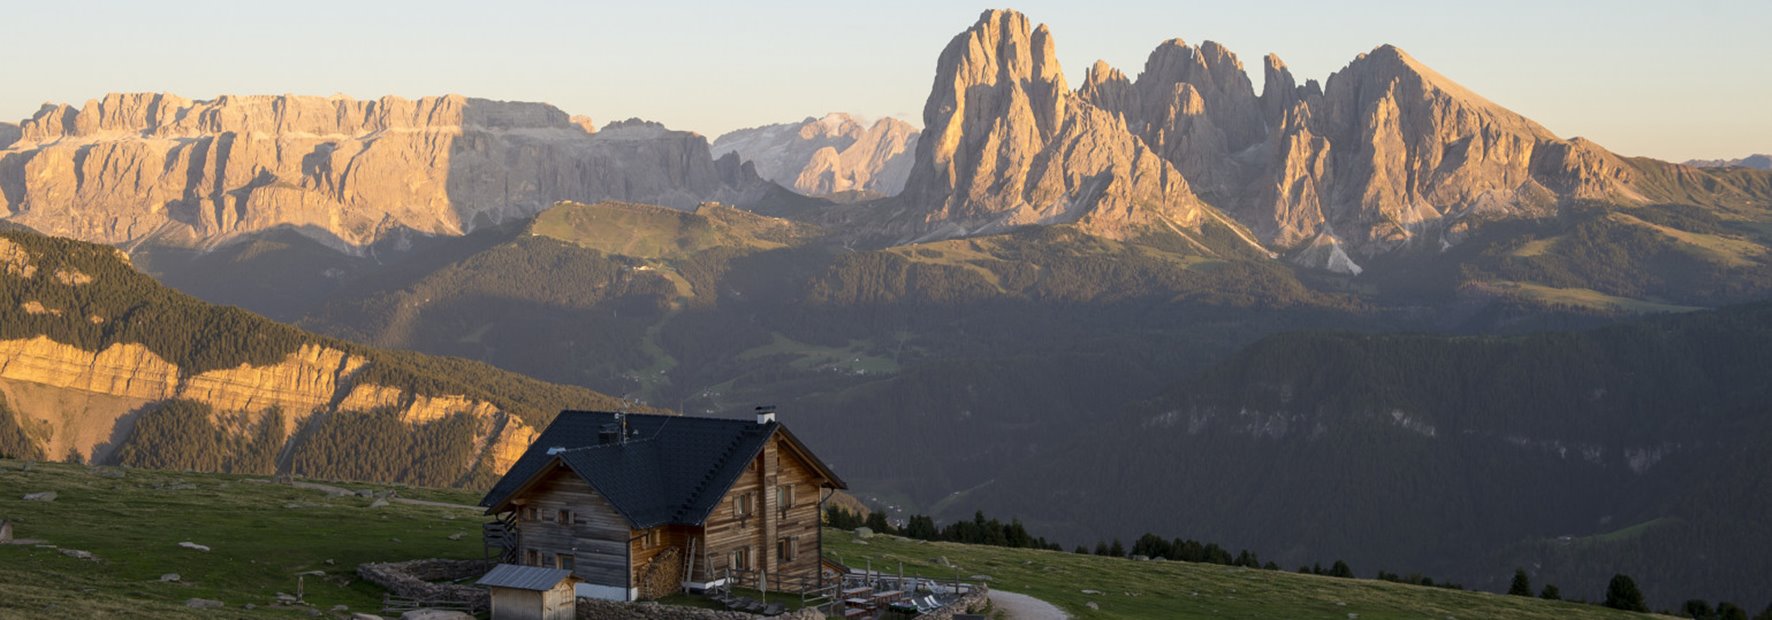 Gemütliche bis sportliche Wanderungen in den Dolomiten und den umliegenden Almen